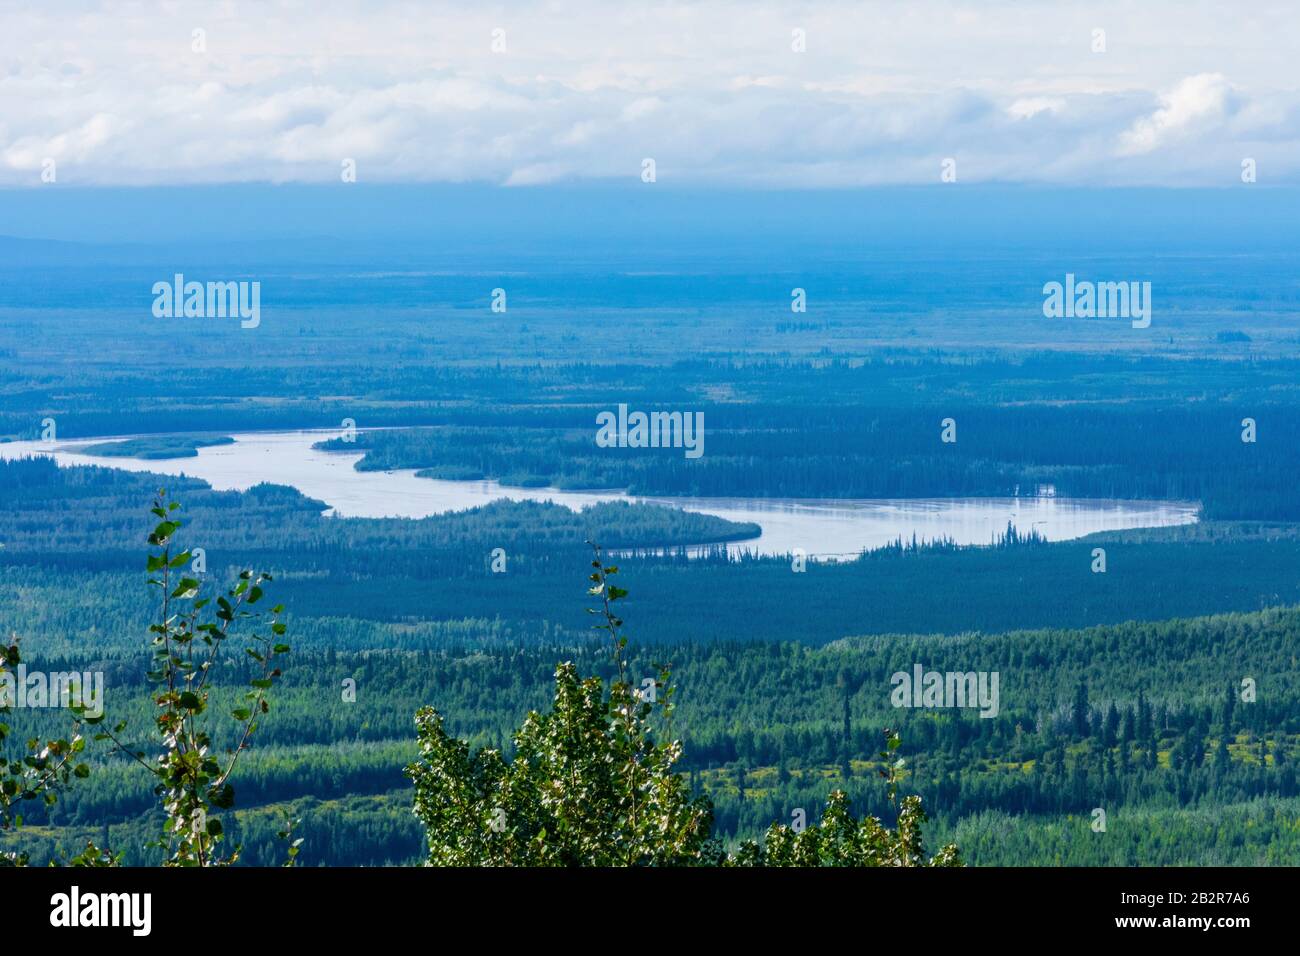 Photographie de paysage de l'Alaska, dernière frontière, lacs pittoresques au-dessus de regard, Fairbanks route de l'Alaska, sauvage Intacte, Pacifique nord-ouest montagnes Banque D'Images